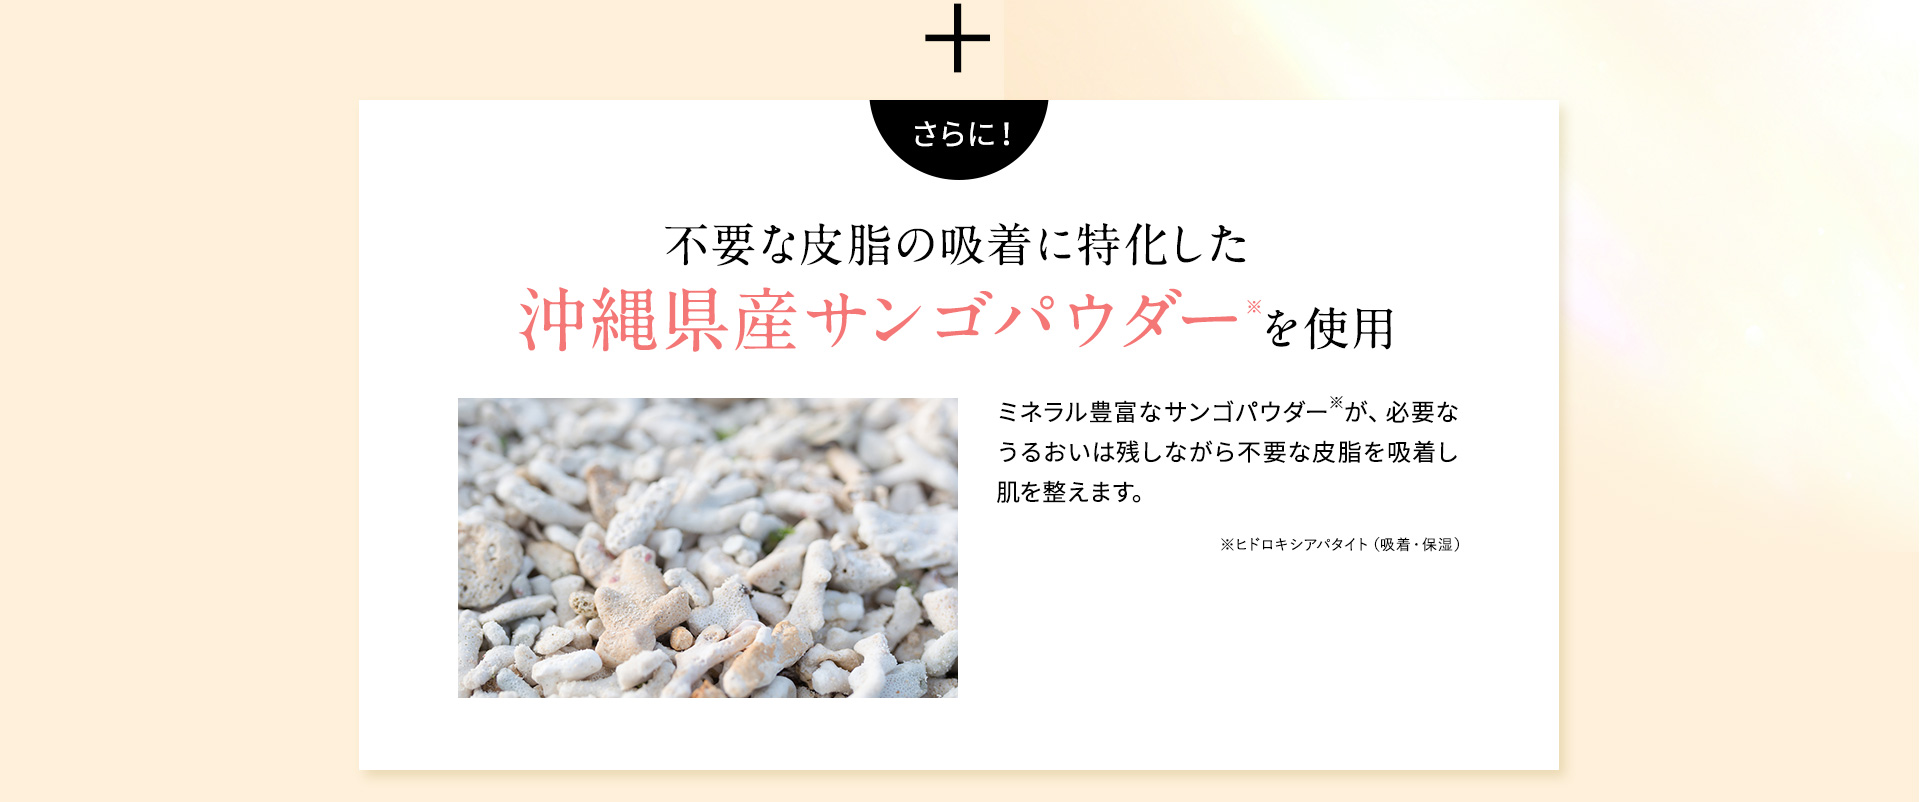 沖縄県産サンゴパウダーを使用